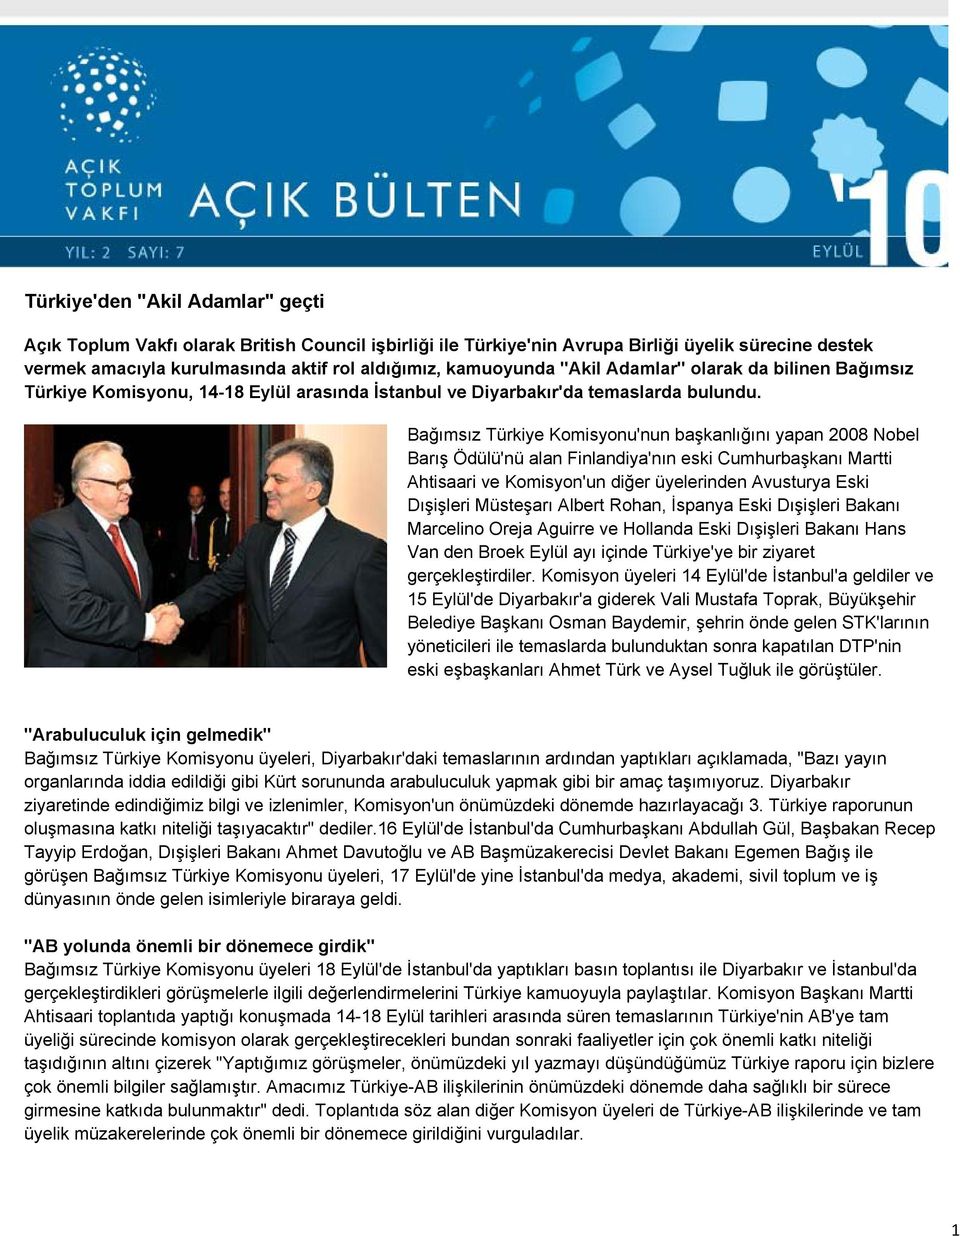 Bağımsız Türkiye Komisyonu'nun başkanlığını yapan 2008 Nobel Barış Ödülü'nü alan Finlandiya'nın eski Cumhurbaşkanı Martti Ahtisaari ve Komisyon'un diğer üyelerinden Avusturya Eski Dışişleri Müsteşarı